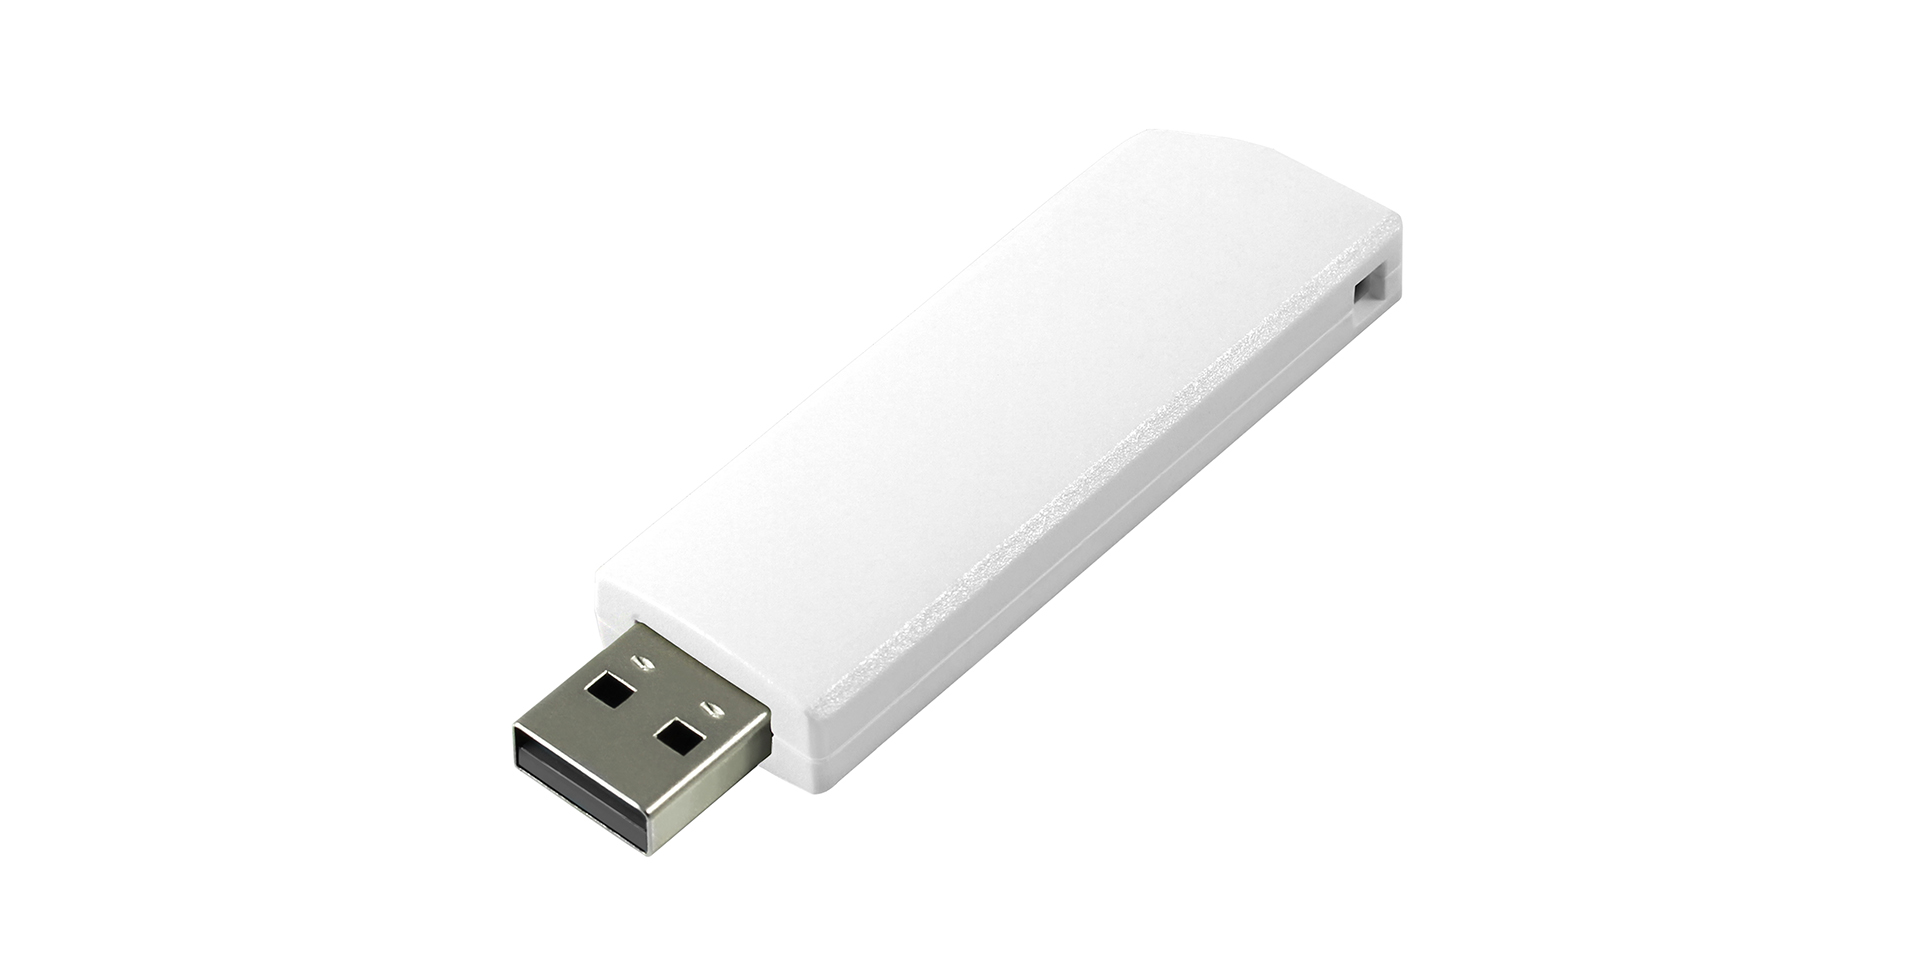 Weiß flash drive mit Ausschiebbare Schnittstelle